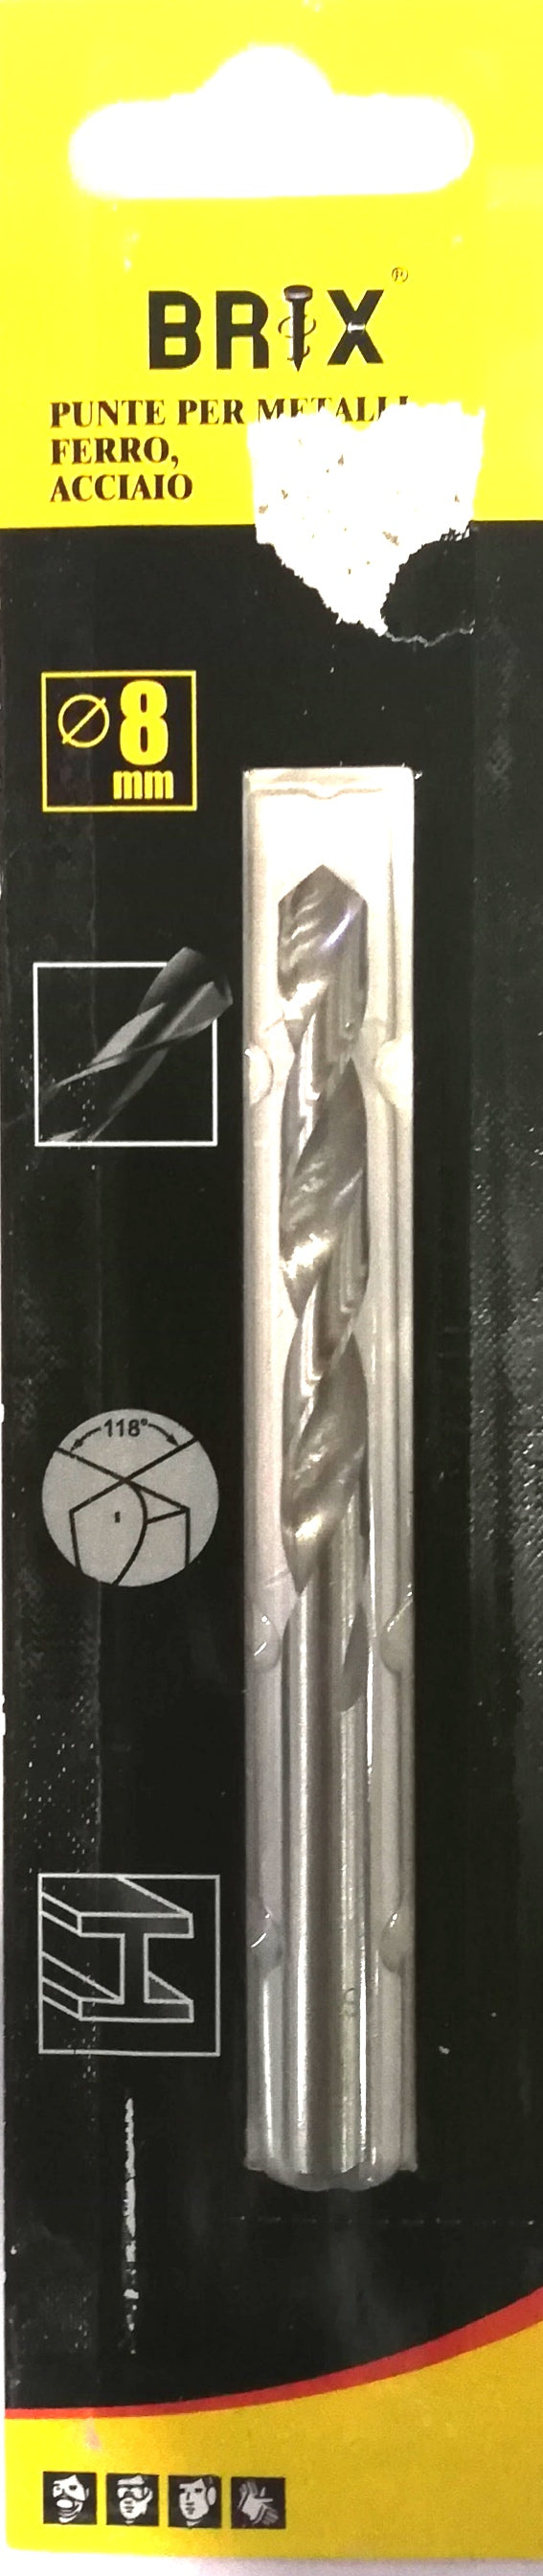 punta per metalli ferro acciaio 8mm (4454178521155)